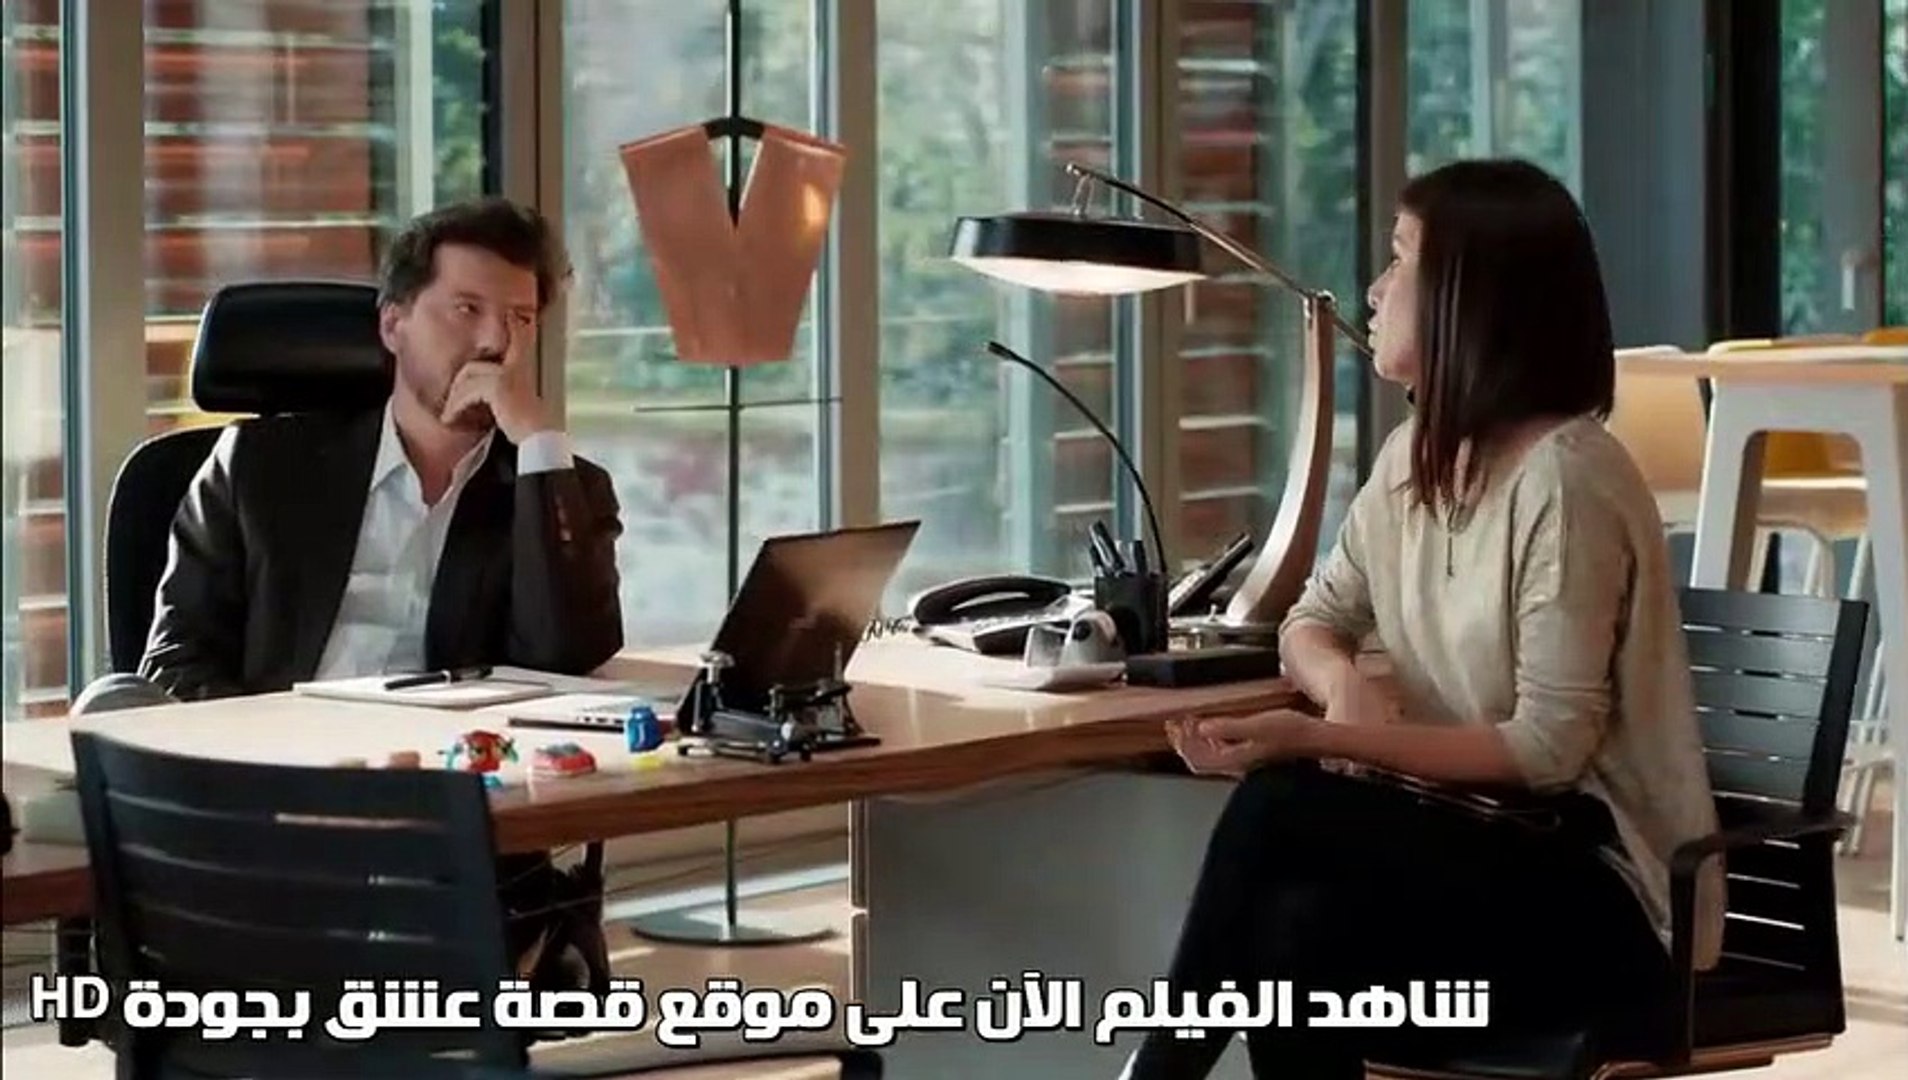 ⁣فيلم ليكن حباً القسم 2 مترجم للعربية - قصة عشق اكسترا